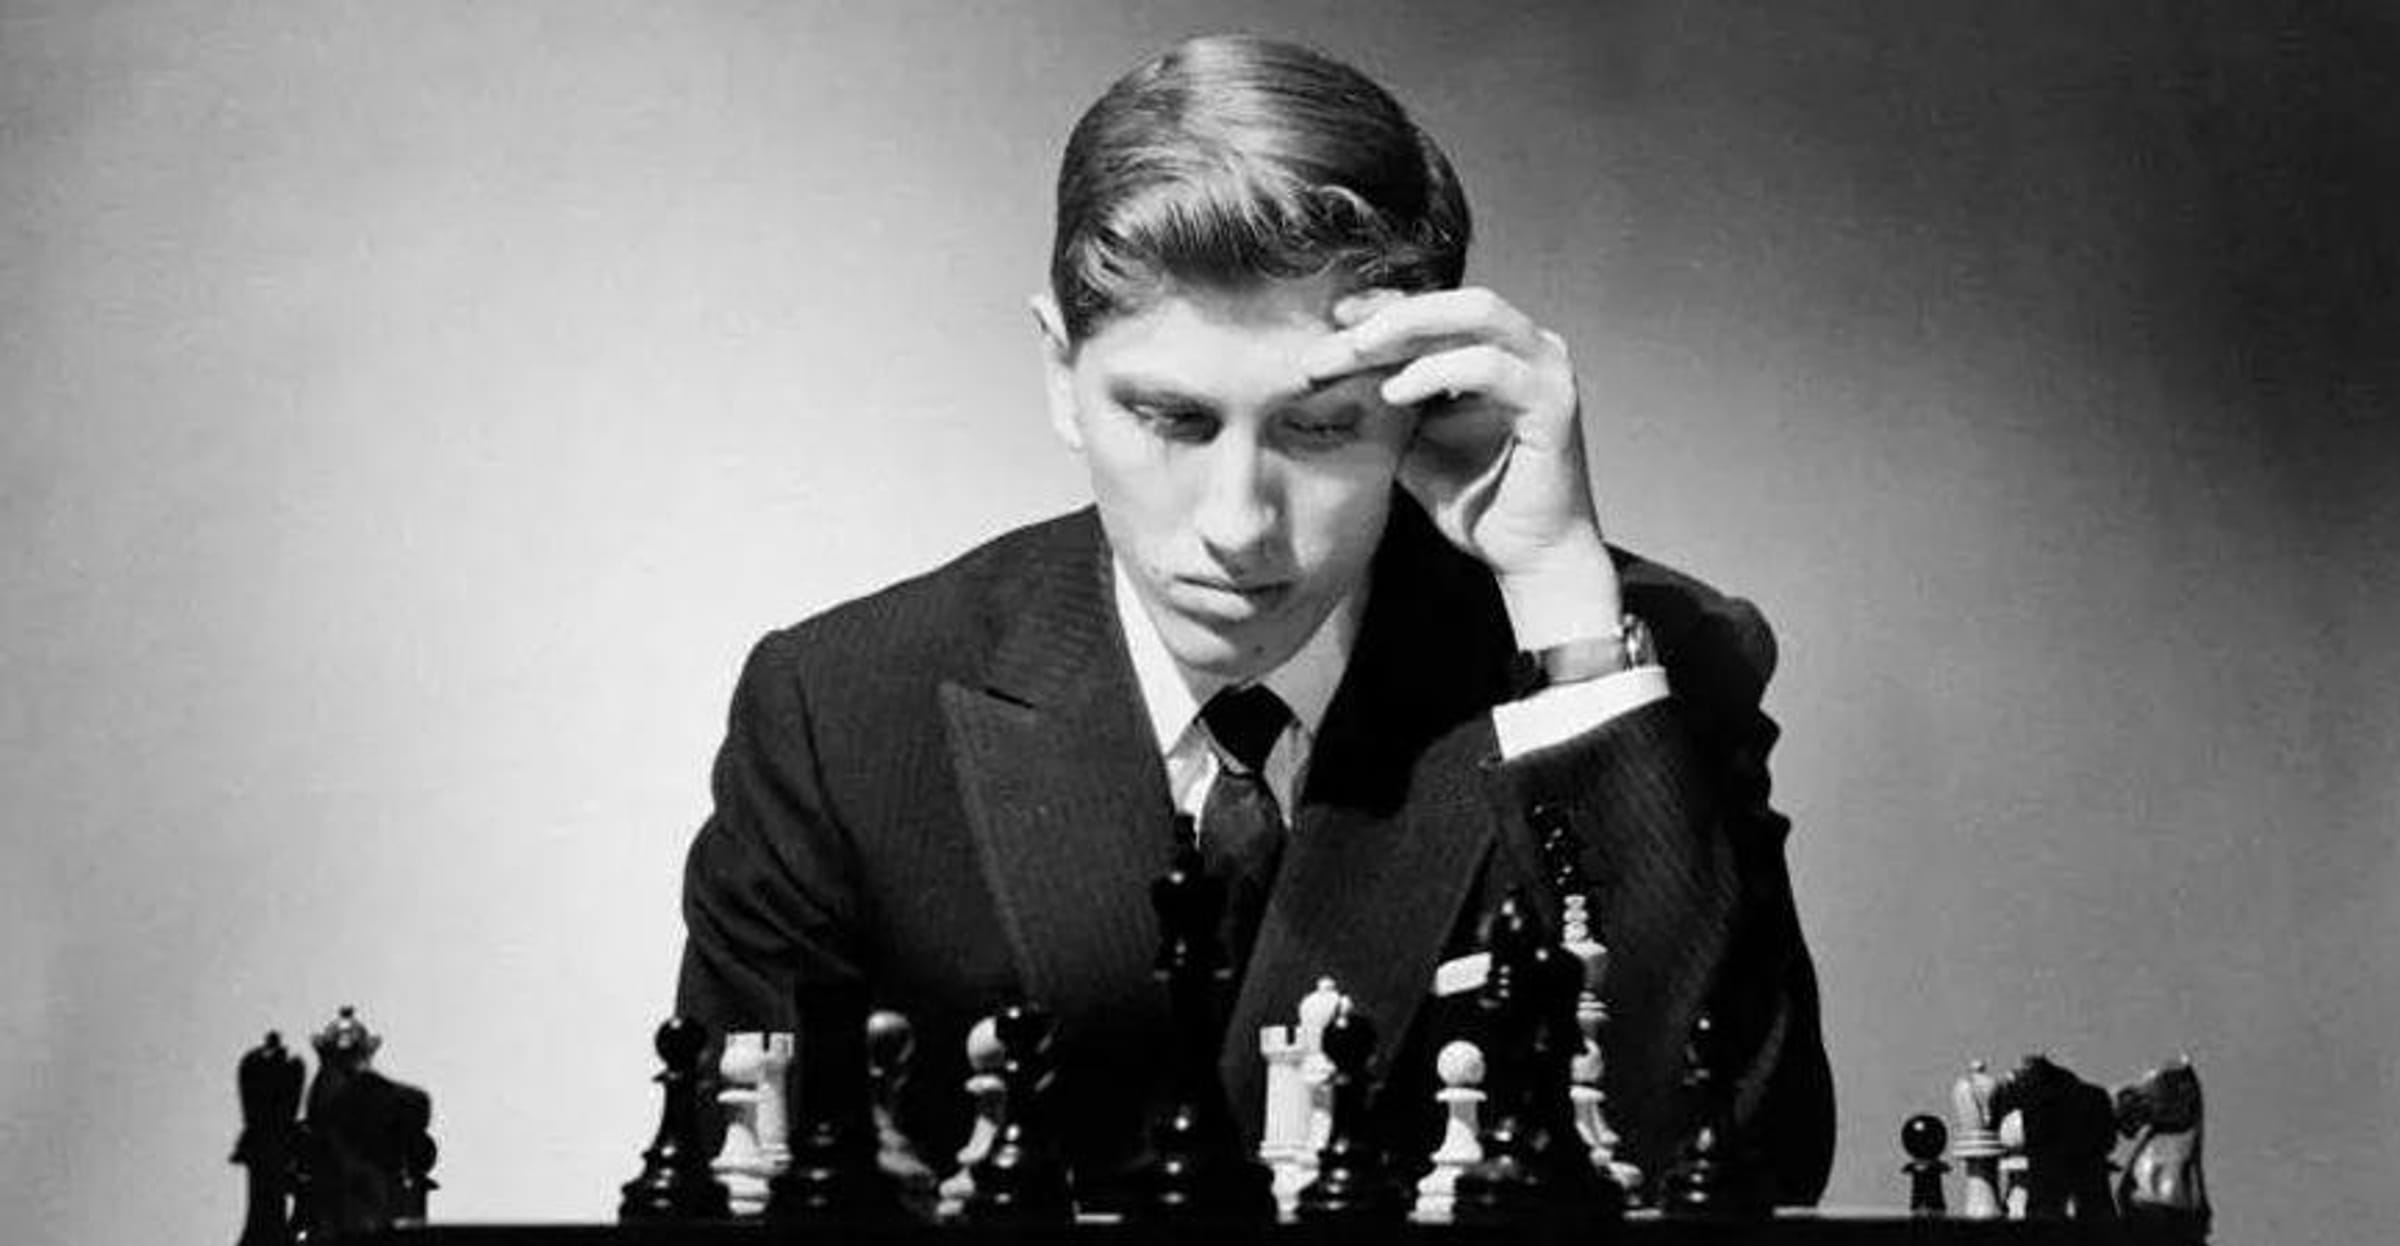 Mentiras E Verdades Sobre Bobby Fischer: Faça o Teste!